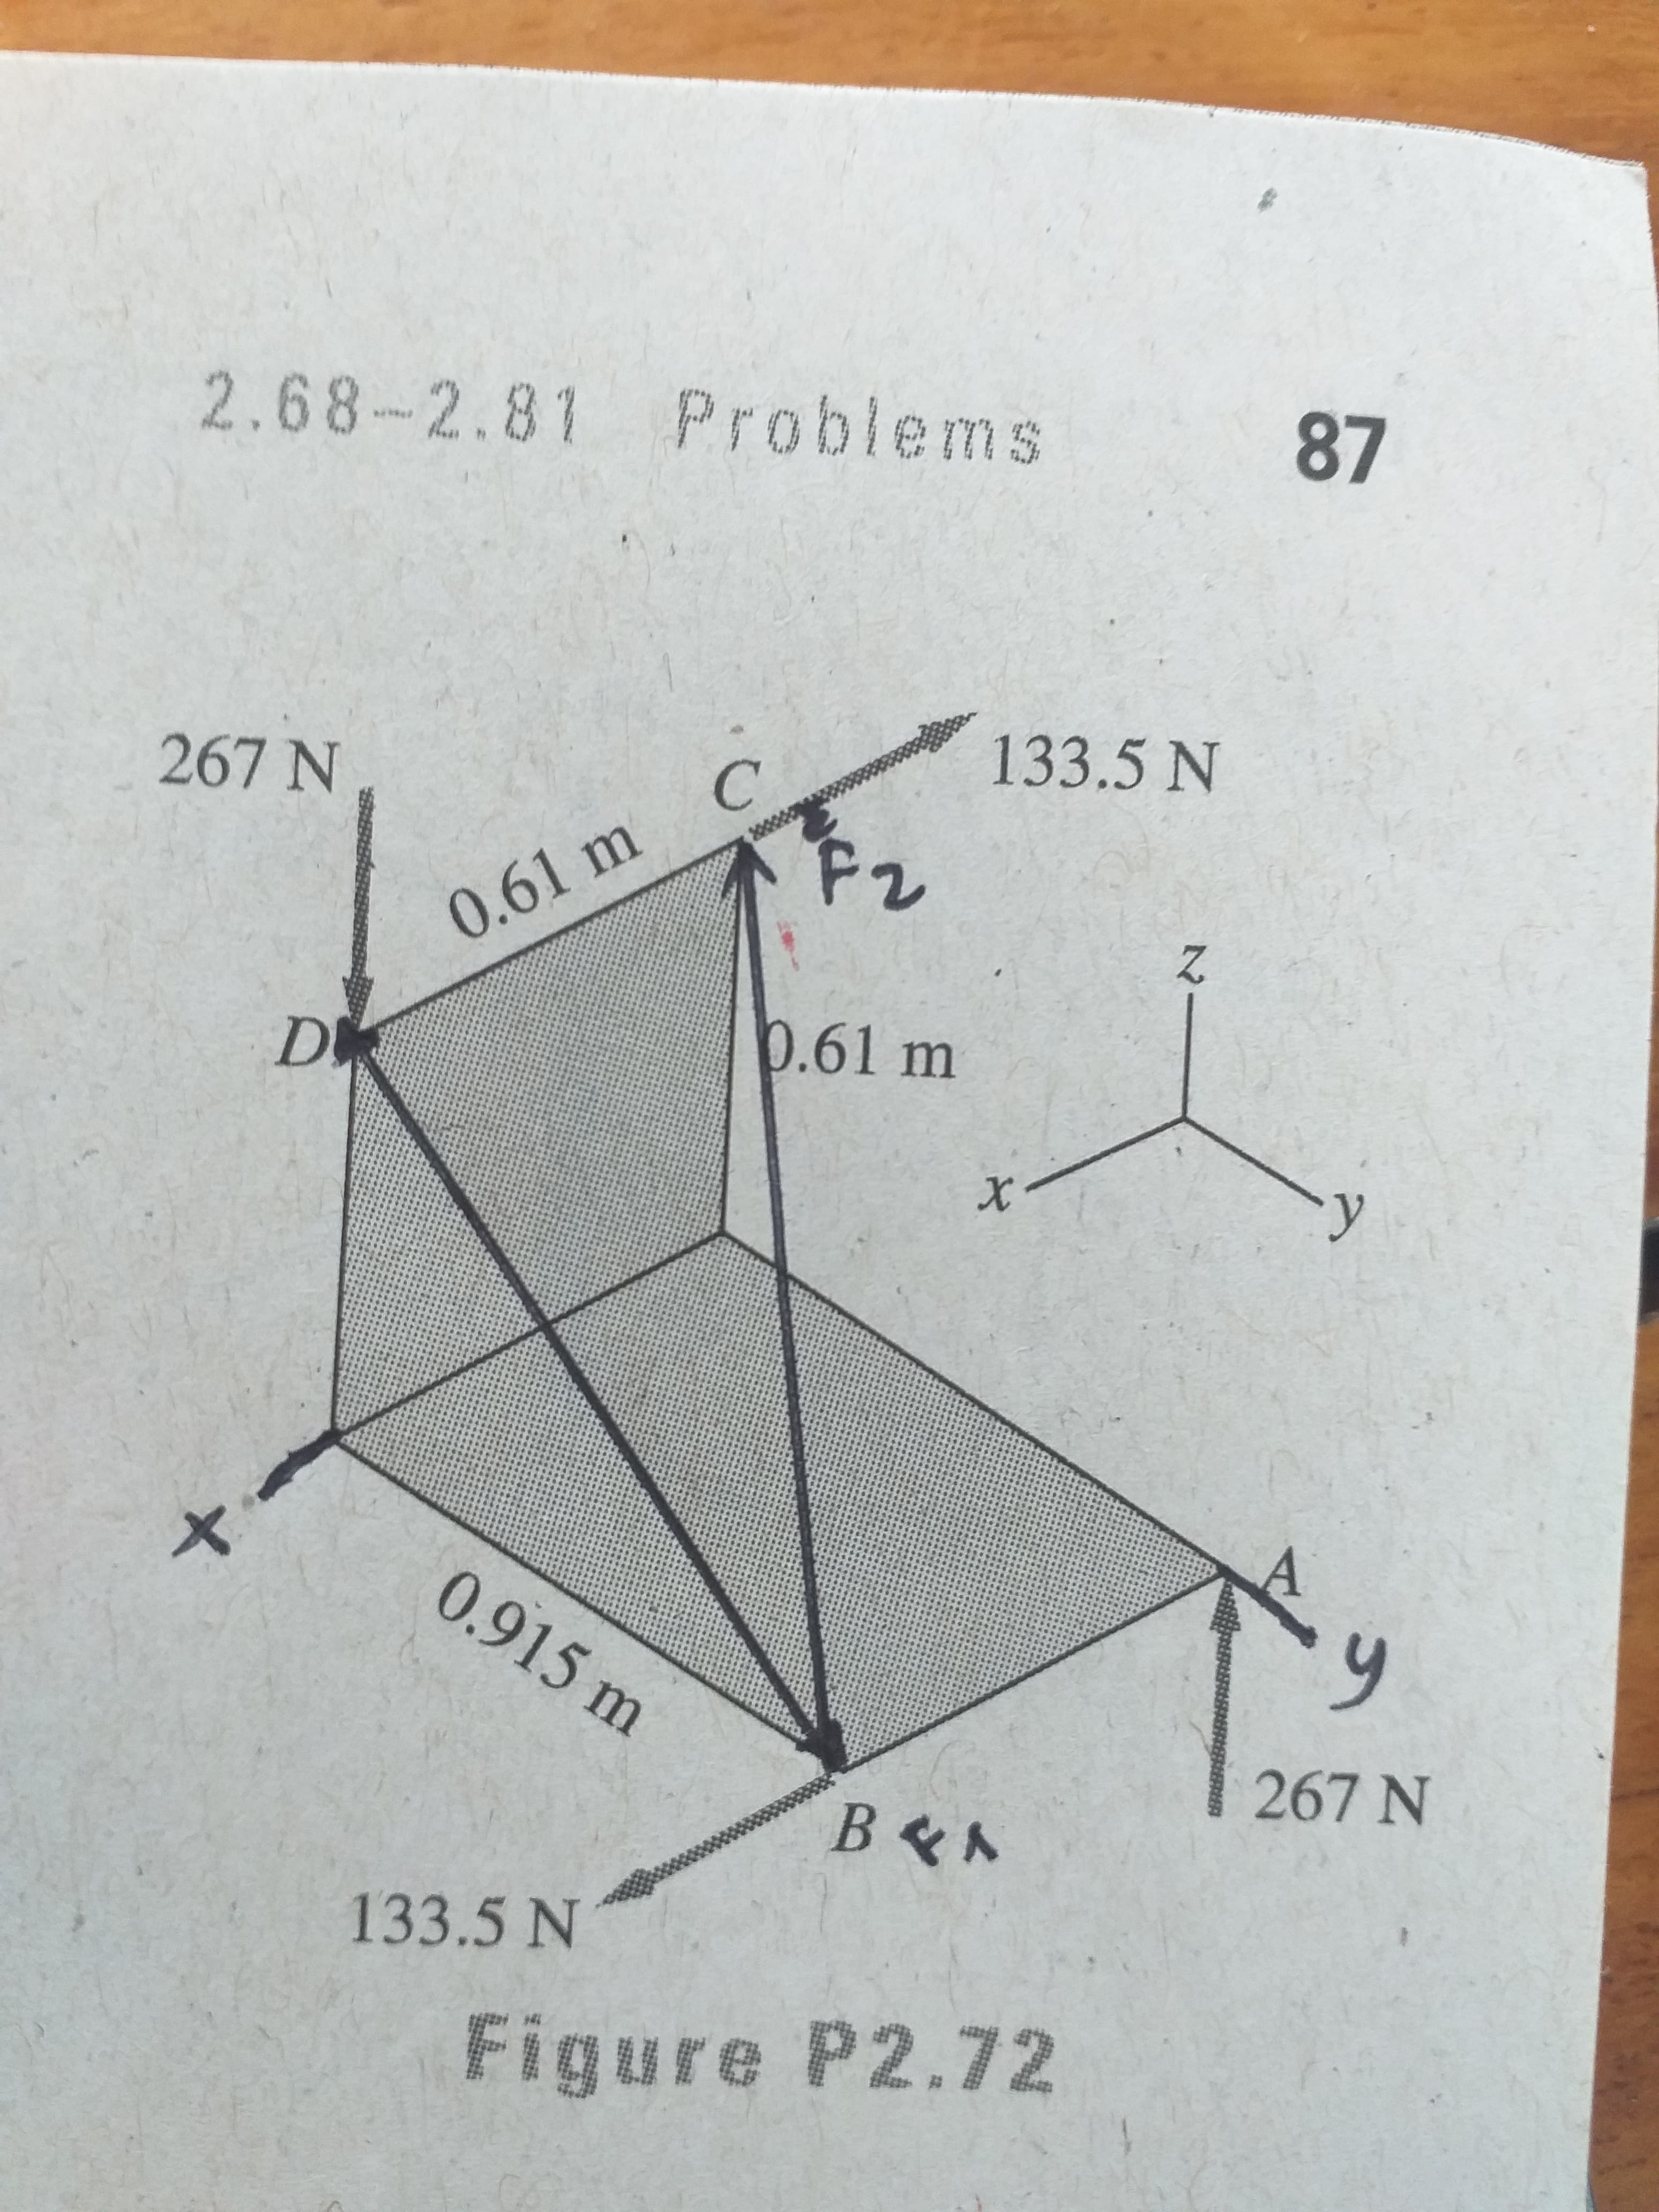 2.68-2.81 Problems
87
this
267 N
C'
133.5 N
2000
0.61 m
D
0.61 m
メ
0.915 m
ఆ
267 N
133.5 N
Figure P2.72
